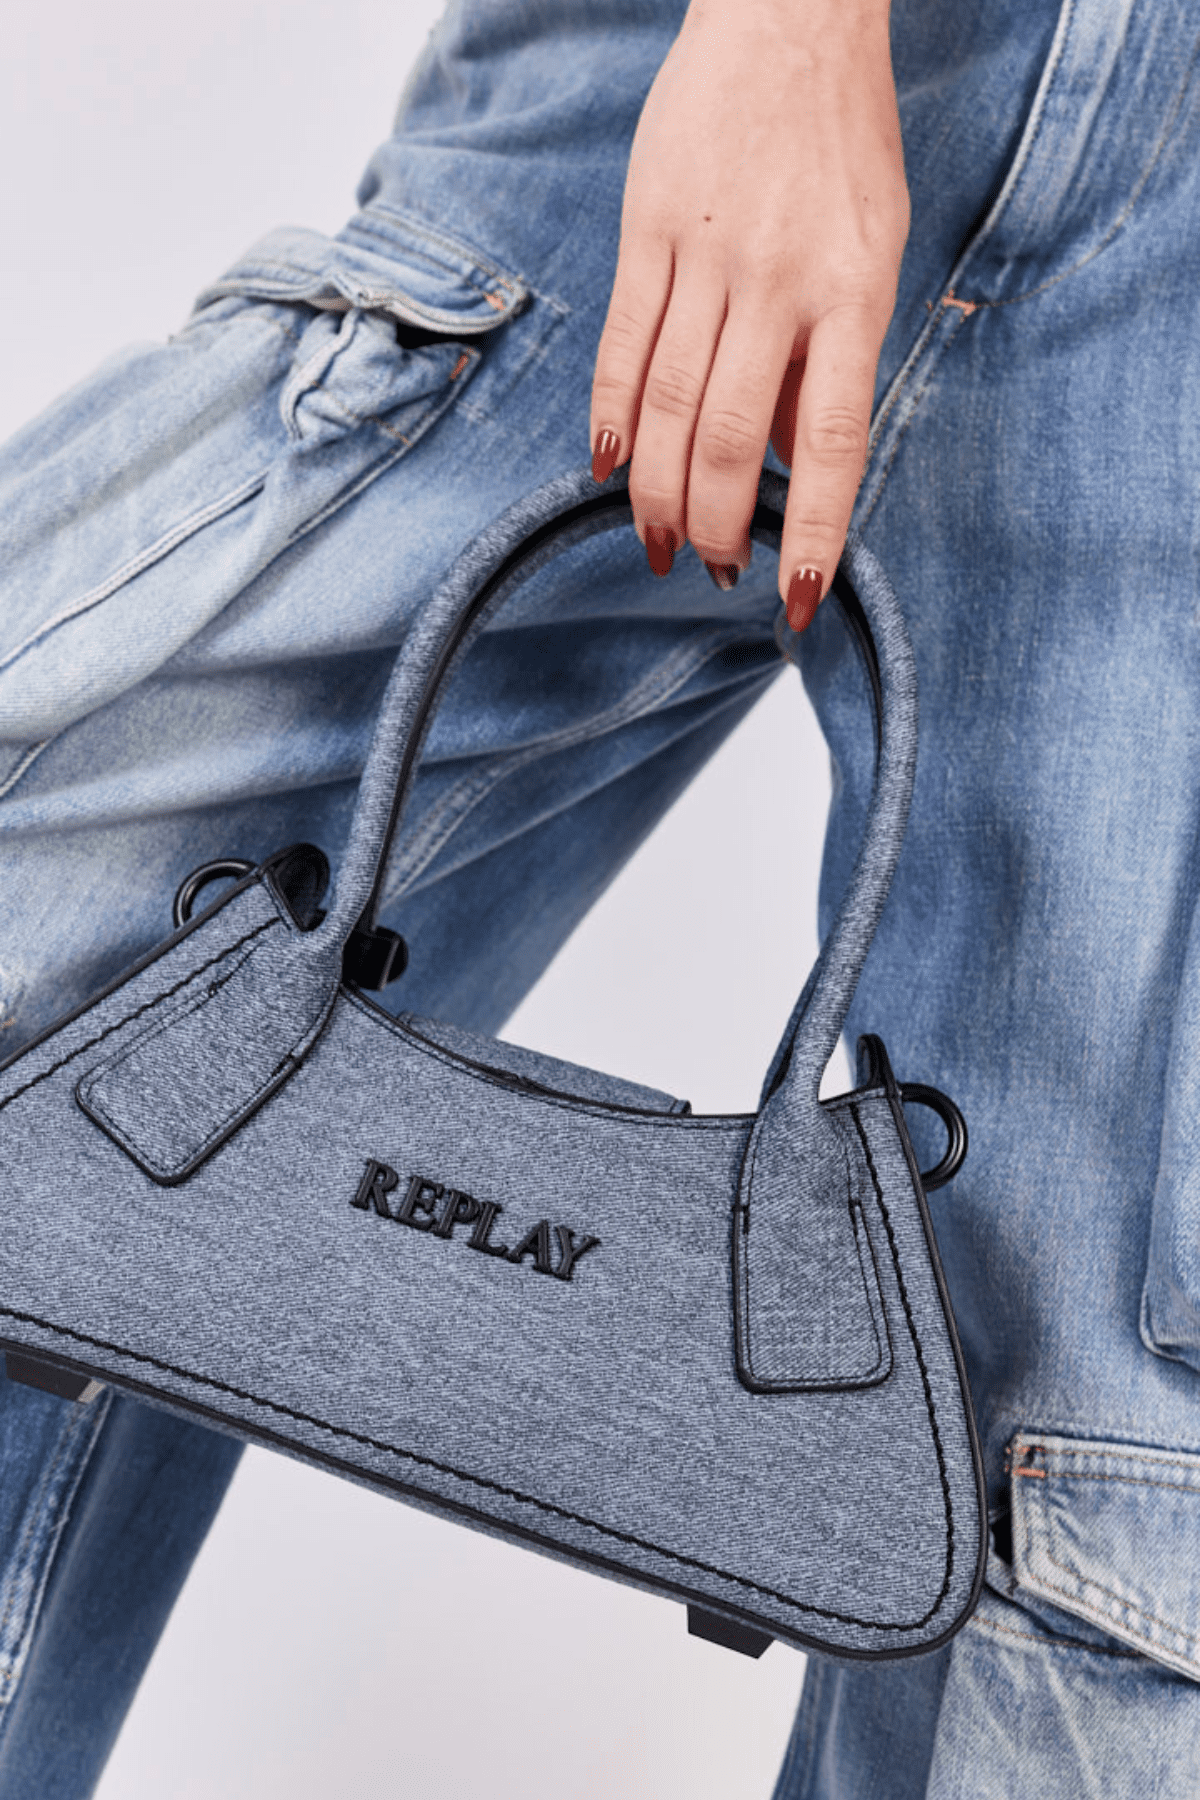 תיק כתף קטן מבית ריפליי ג'ינס Replay Jeans לנשים צבע כחול ג'ינס-Replay-One Size-נאקו